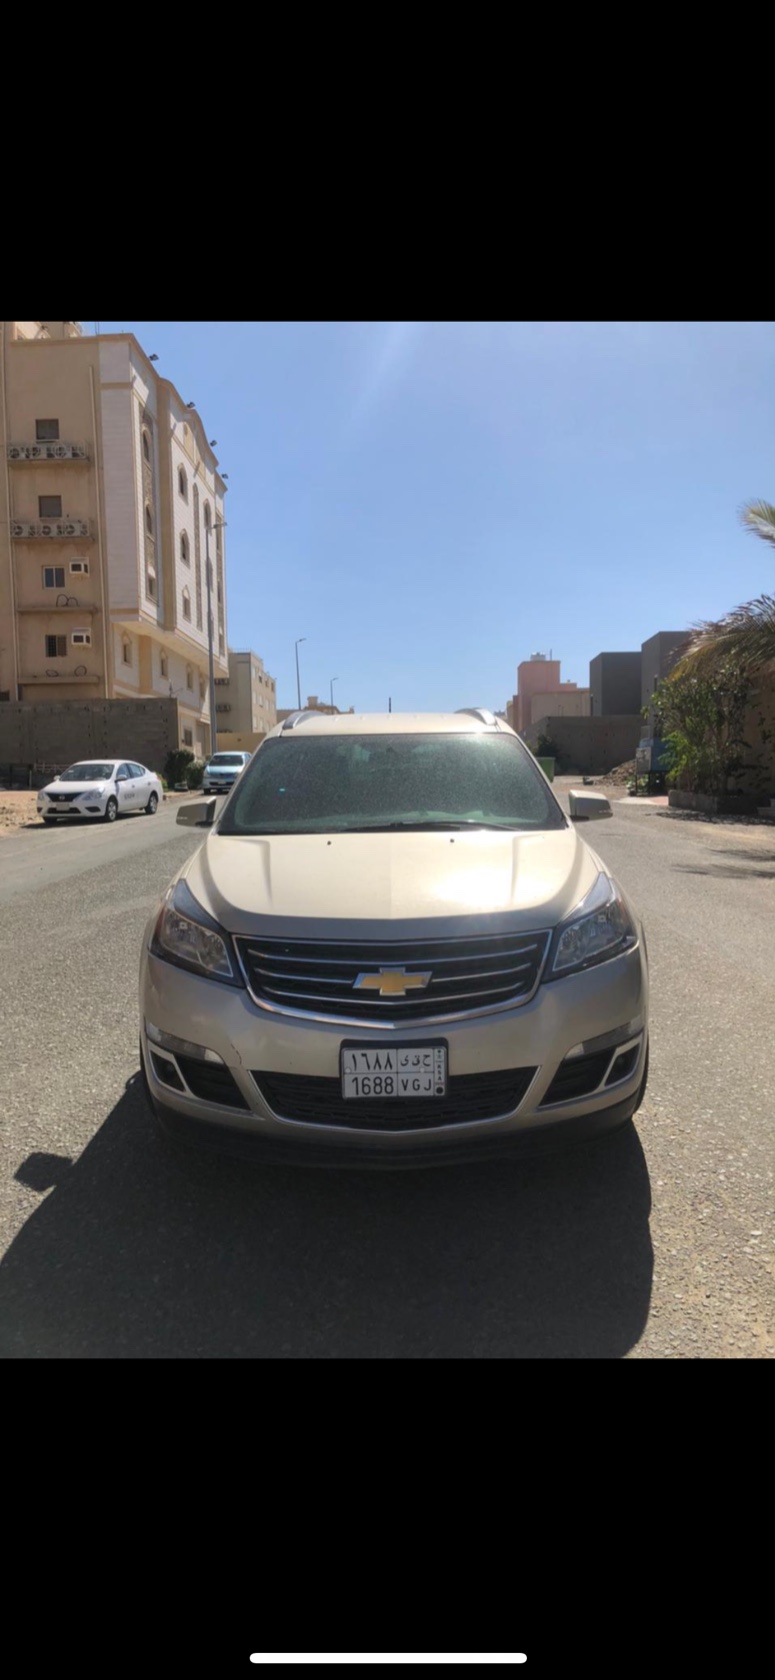 سيارة شيفروليه ترافرس موديل 2015 للبيع فى مكة السعودية